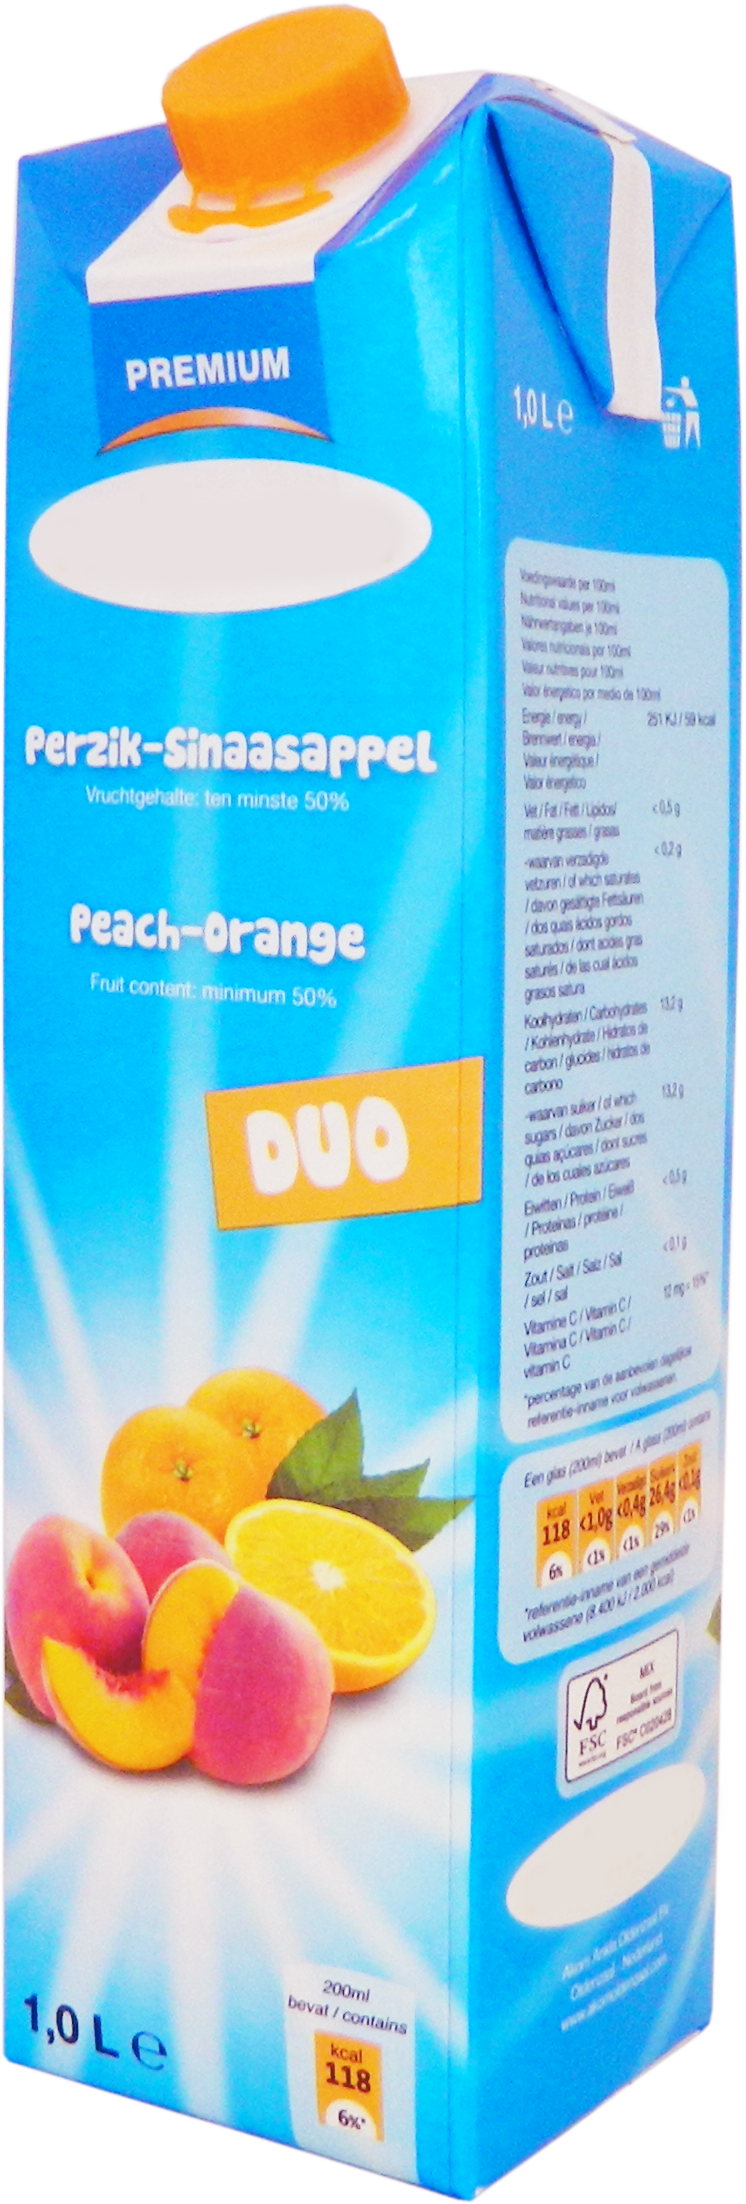 Premium Pfirsich-Orangensaft 1,0 Liter